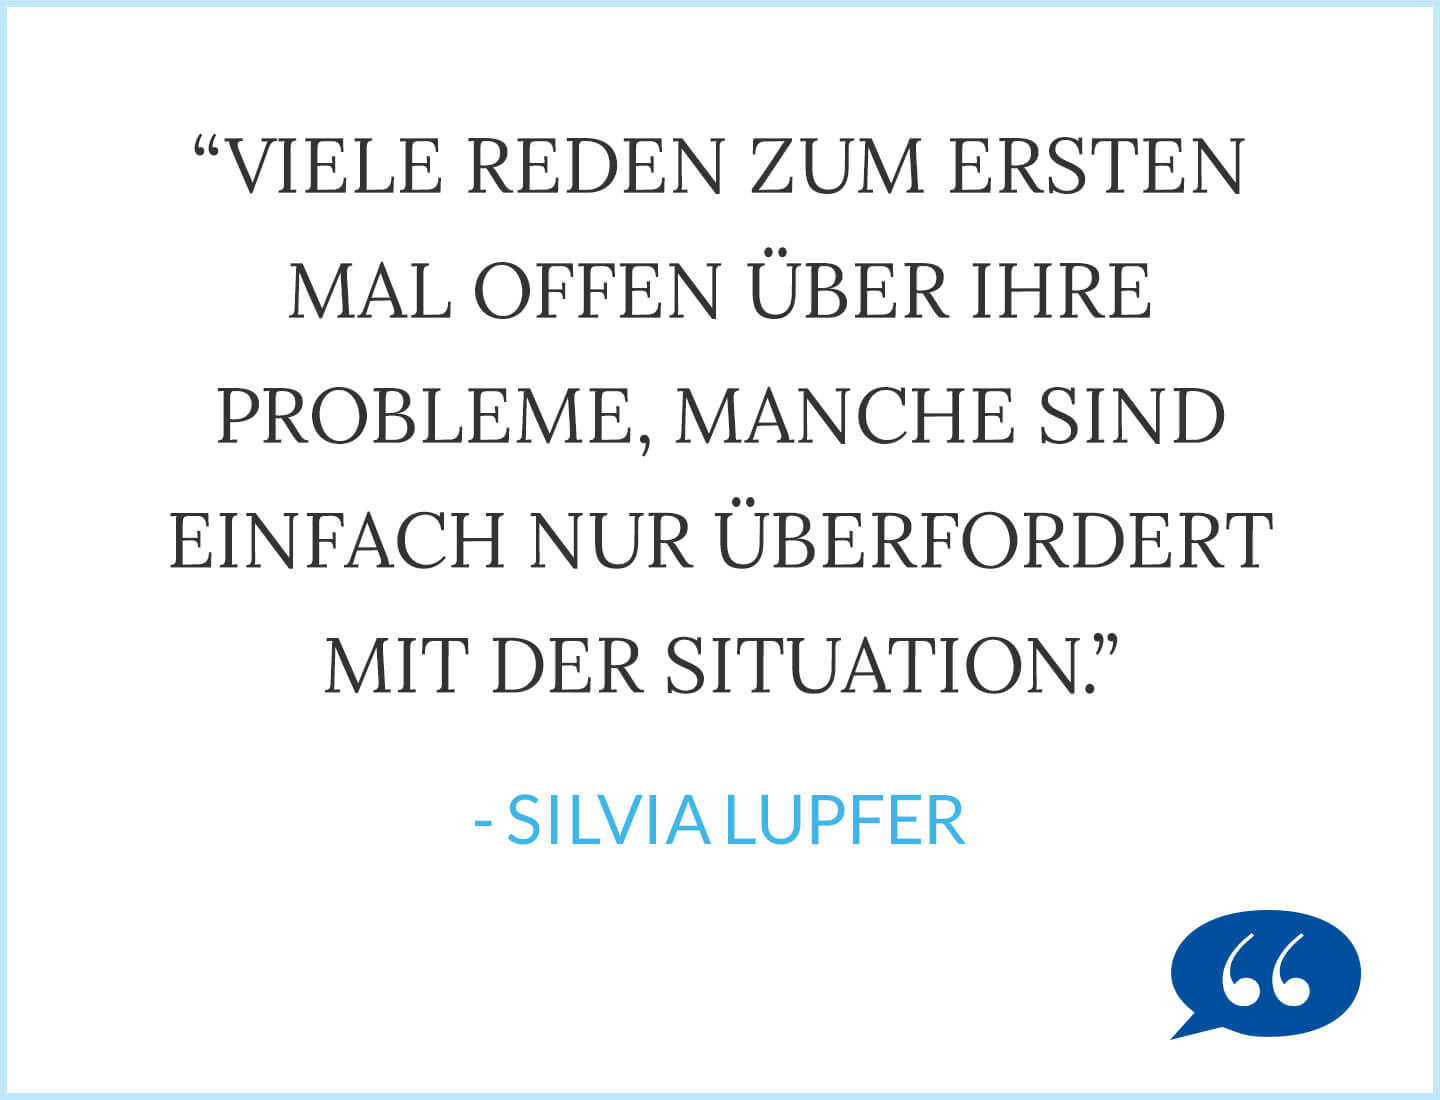 Zitat: Viele reden zum ersten Mal offen über ihre Probleme, manche sind einfach nur überfordert mit der Situation - Silvia Lupfer